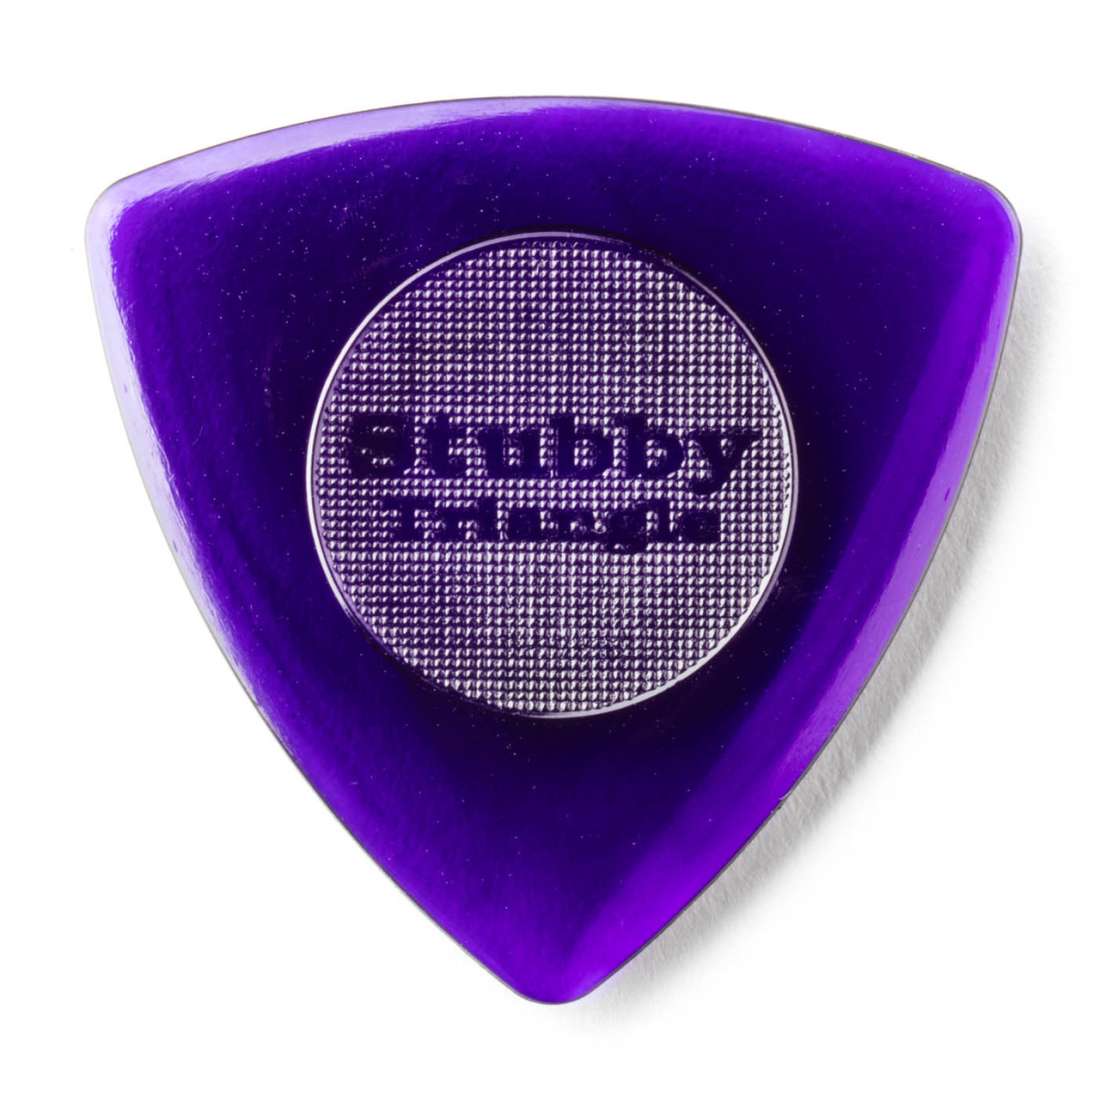 Tri Stubby Picks Refill (24 Pack) - 3mm